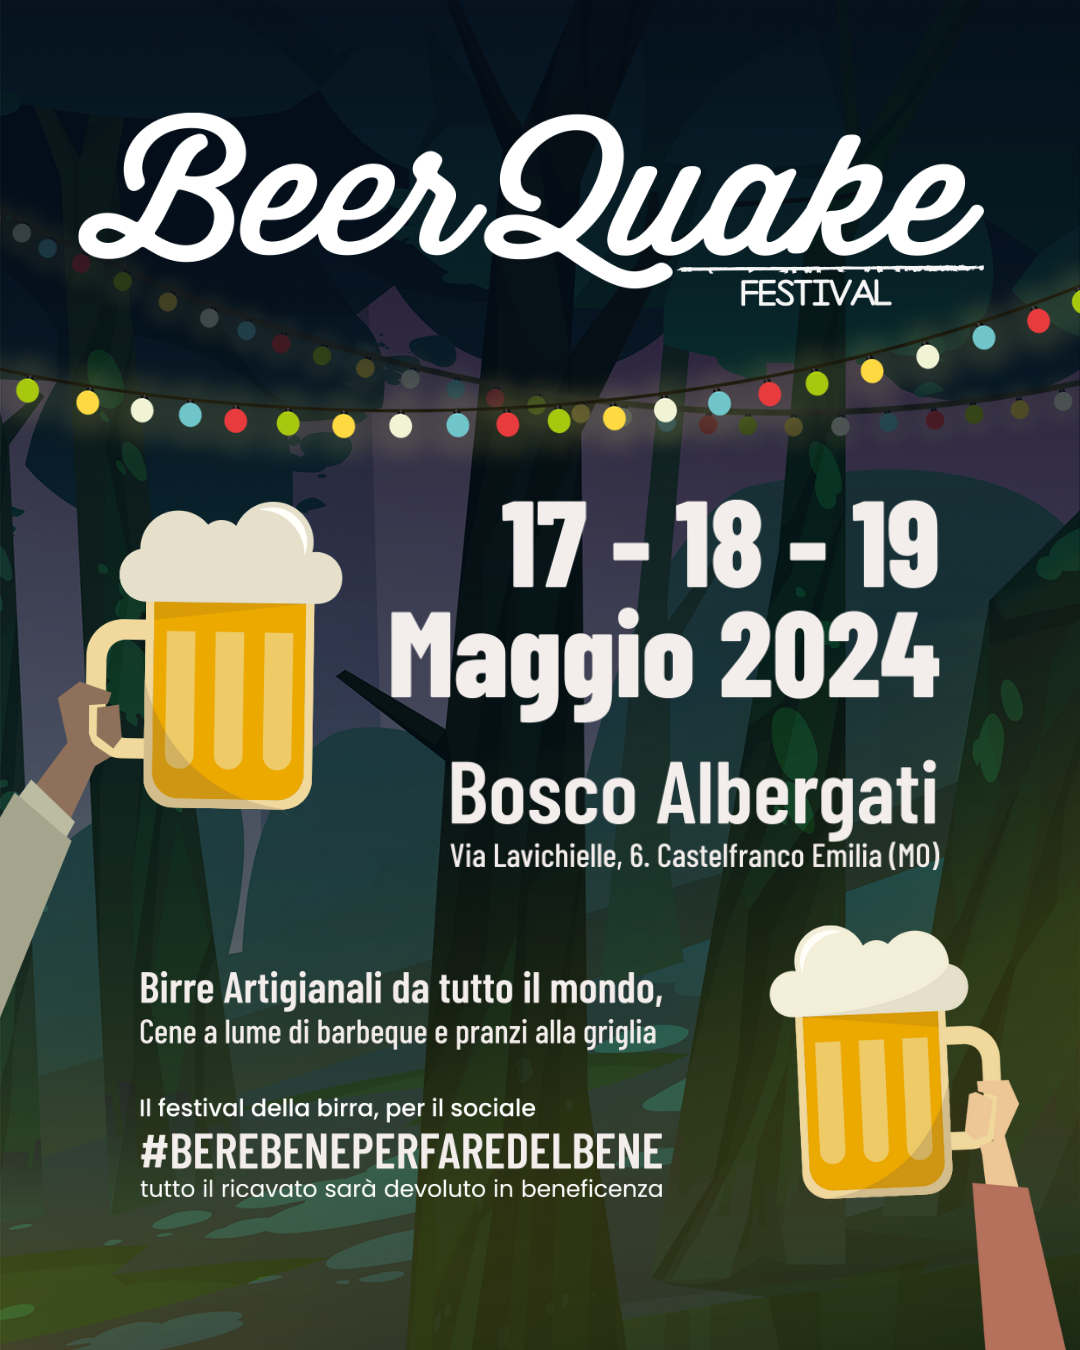 BeerQuake: il Festival di Birre Artigianali modenese torna per la Decima Edizione Primaverile